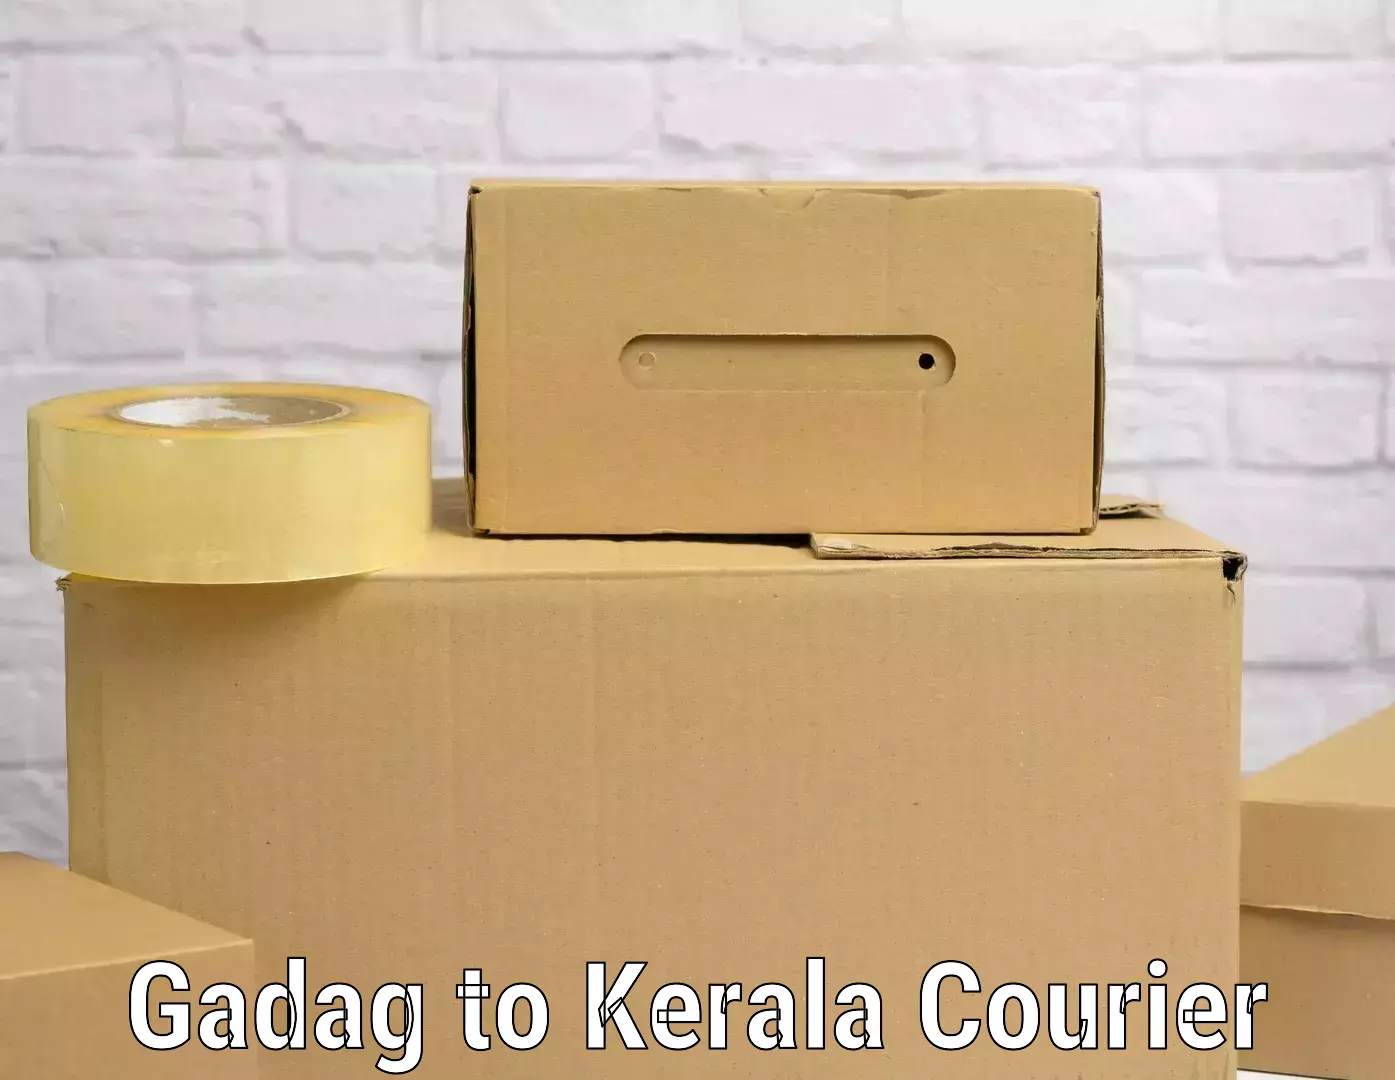 Door-to-door baggage service Gadag to Kerala